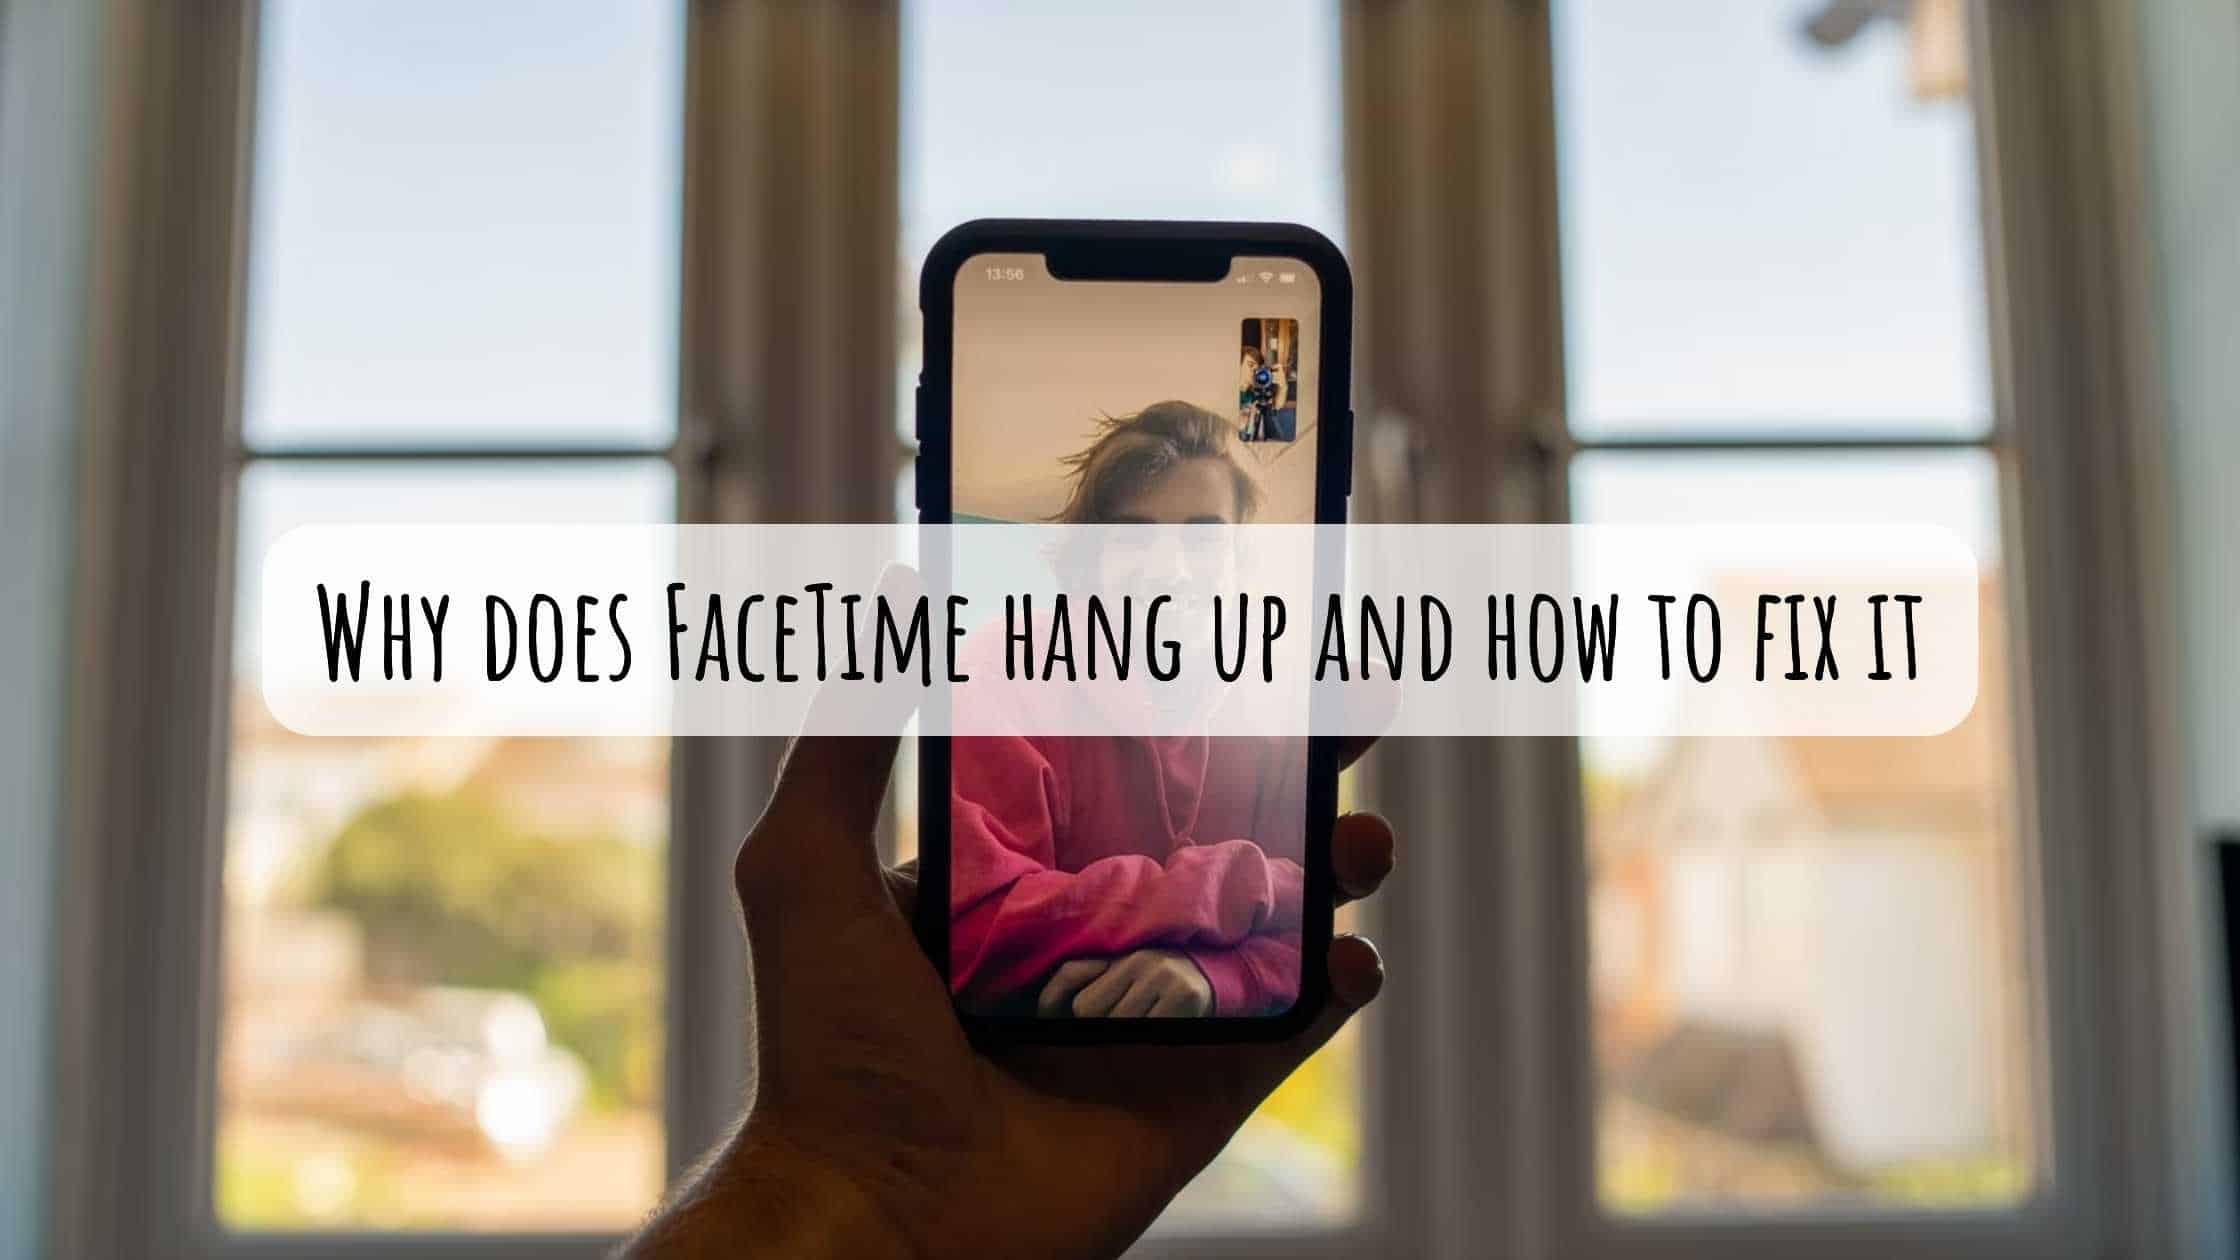 ¿Una alarma cuelga una llamada de FaceTime?